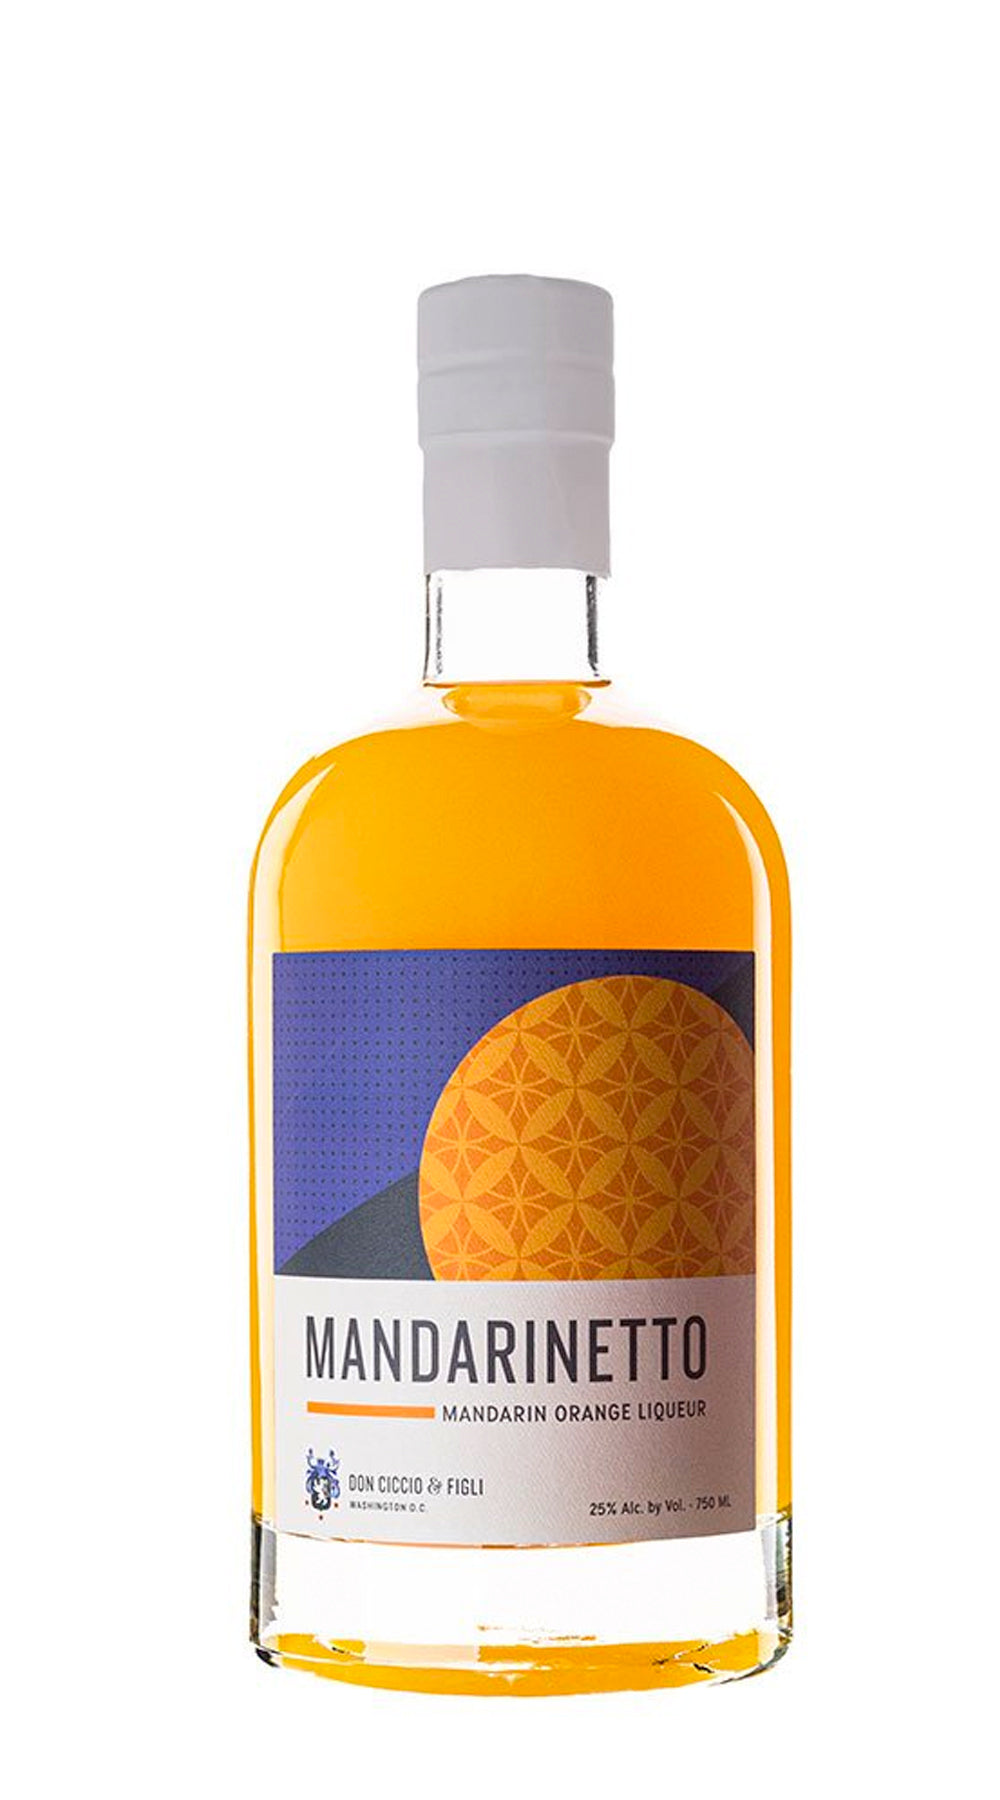 Don Ciccio & Figli Mandarinetto Liqueur